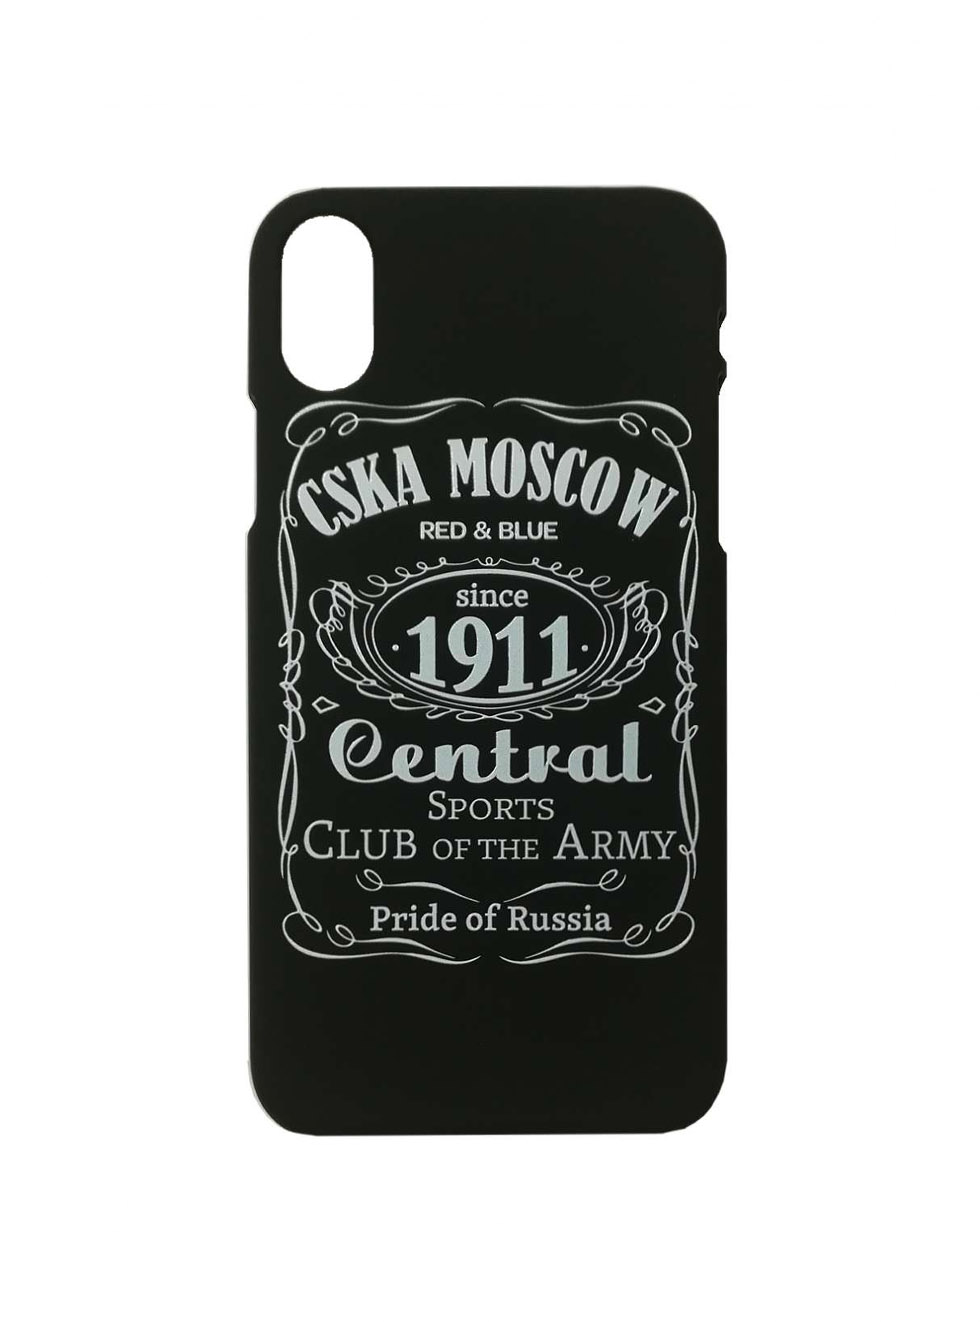 Клип-кейс для iPhone "CSKA MOSCOW 1911" cover, цвет чёрный (IPhone 7Plus / 8Plus) от Cskashop